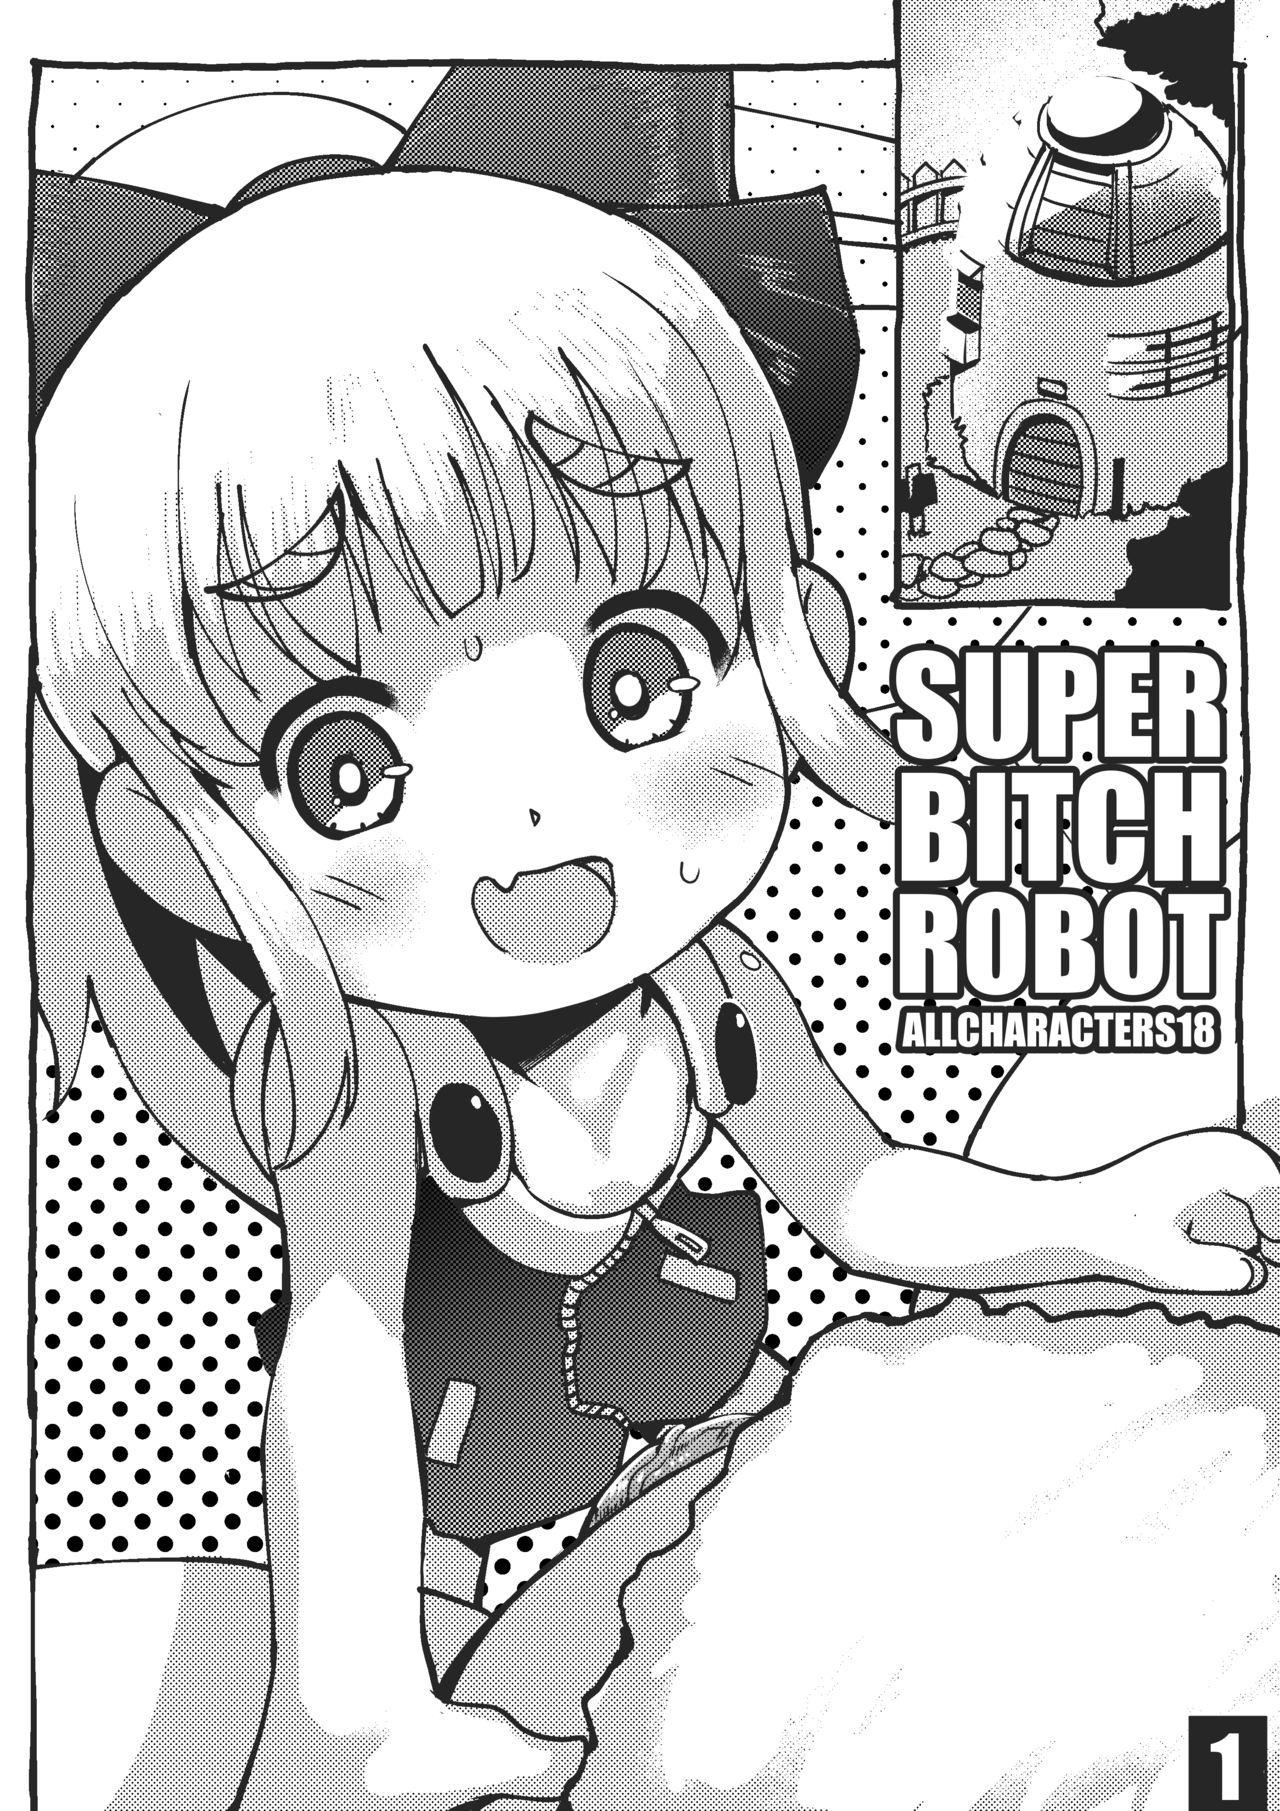 Super Bitch Robot 2